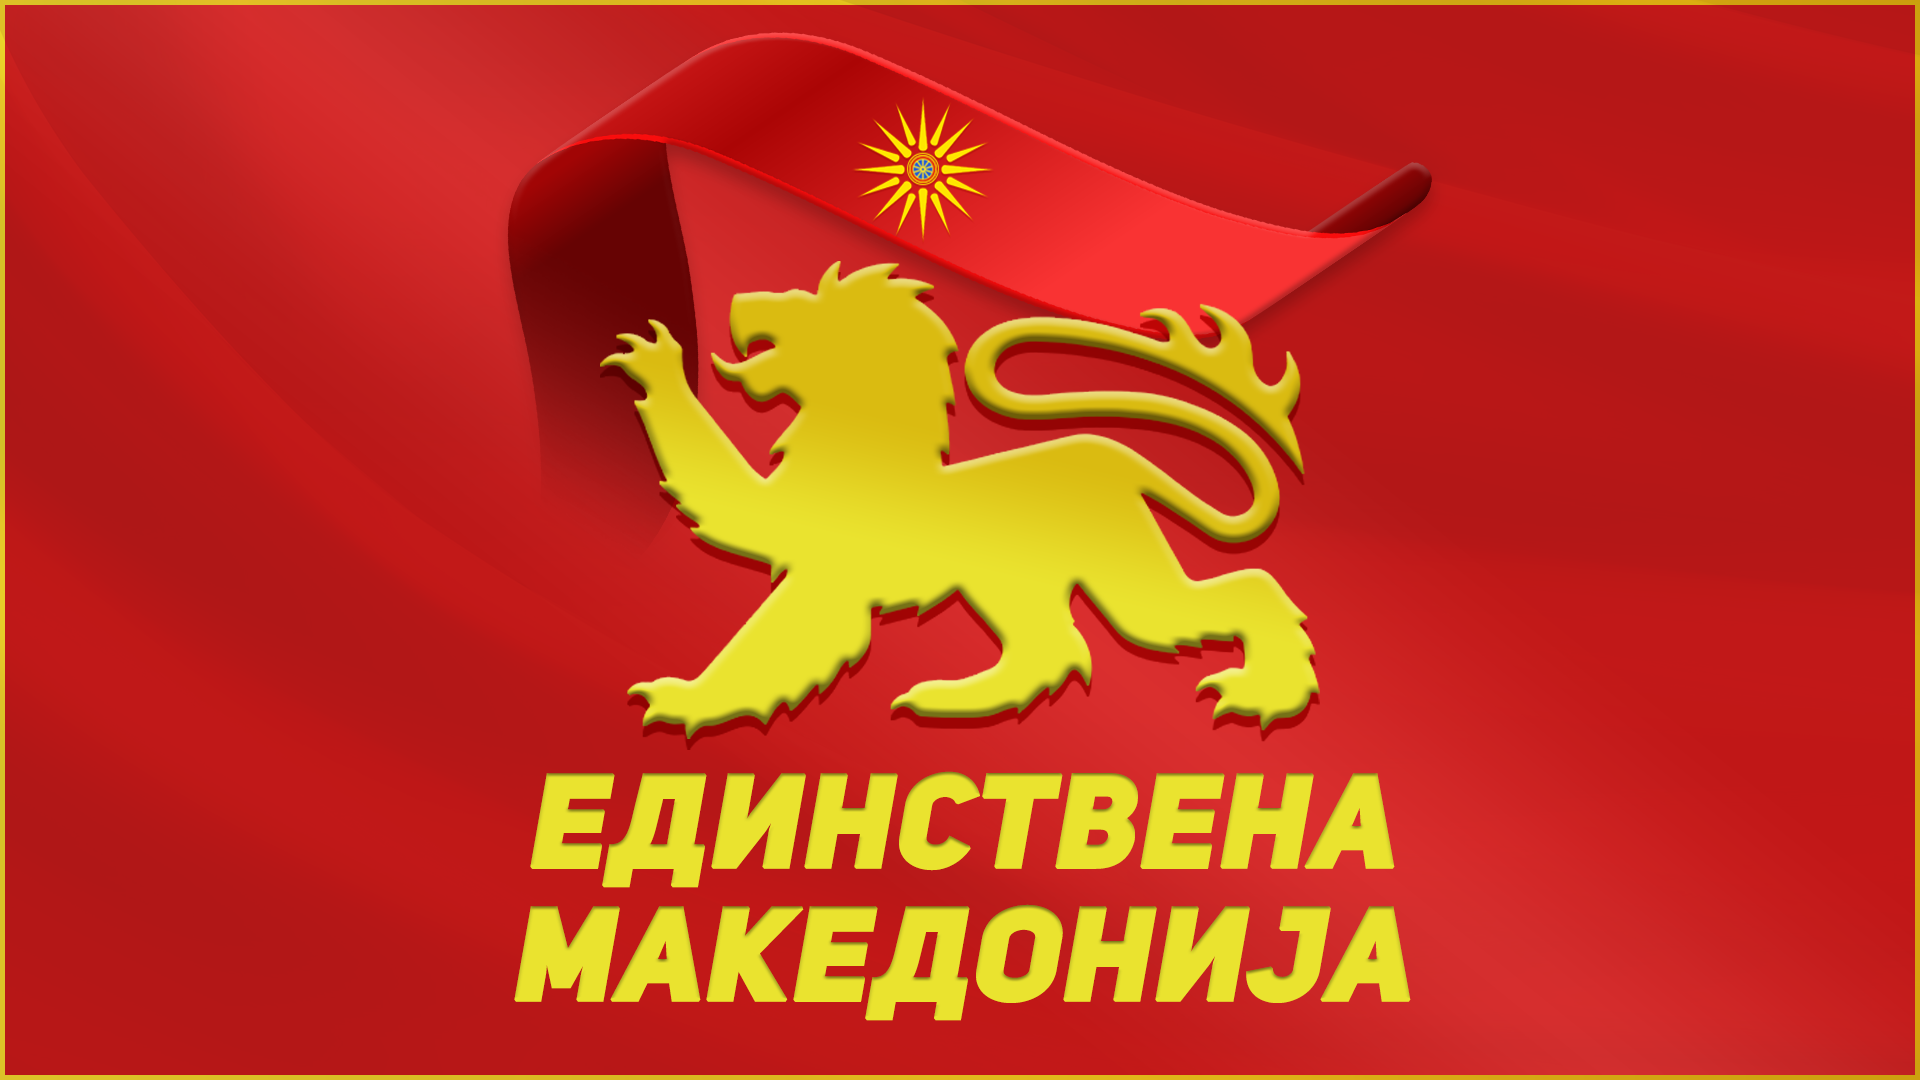 Единствена Македонија до Ковачевски: Дали Заев доби власт од странците во замена за промена на уставот и бришење на се што е македонско